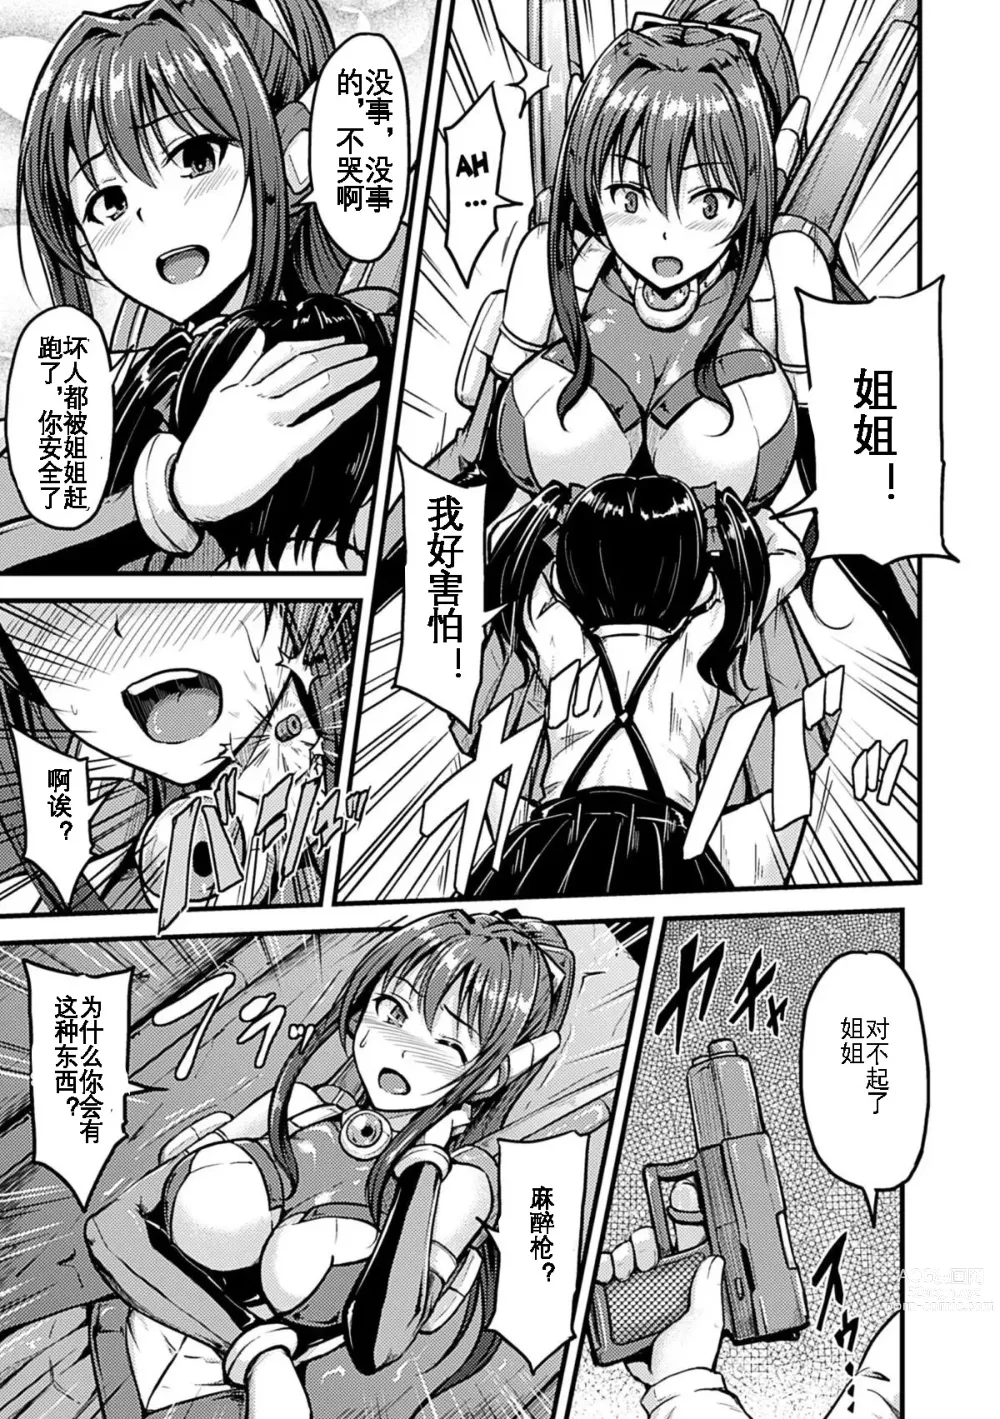 Page 4 of manga Irisraker Buta no Ko o Haramu Seigi no Senshi